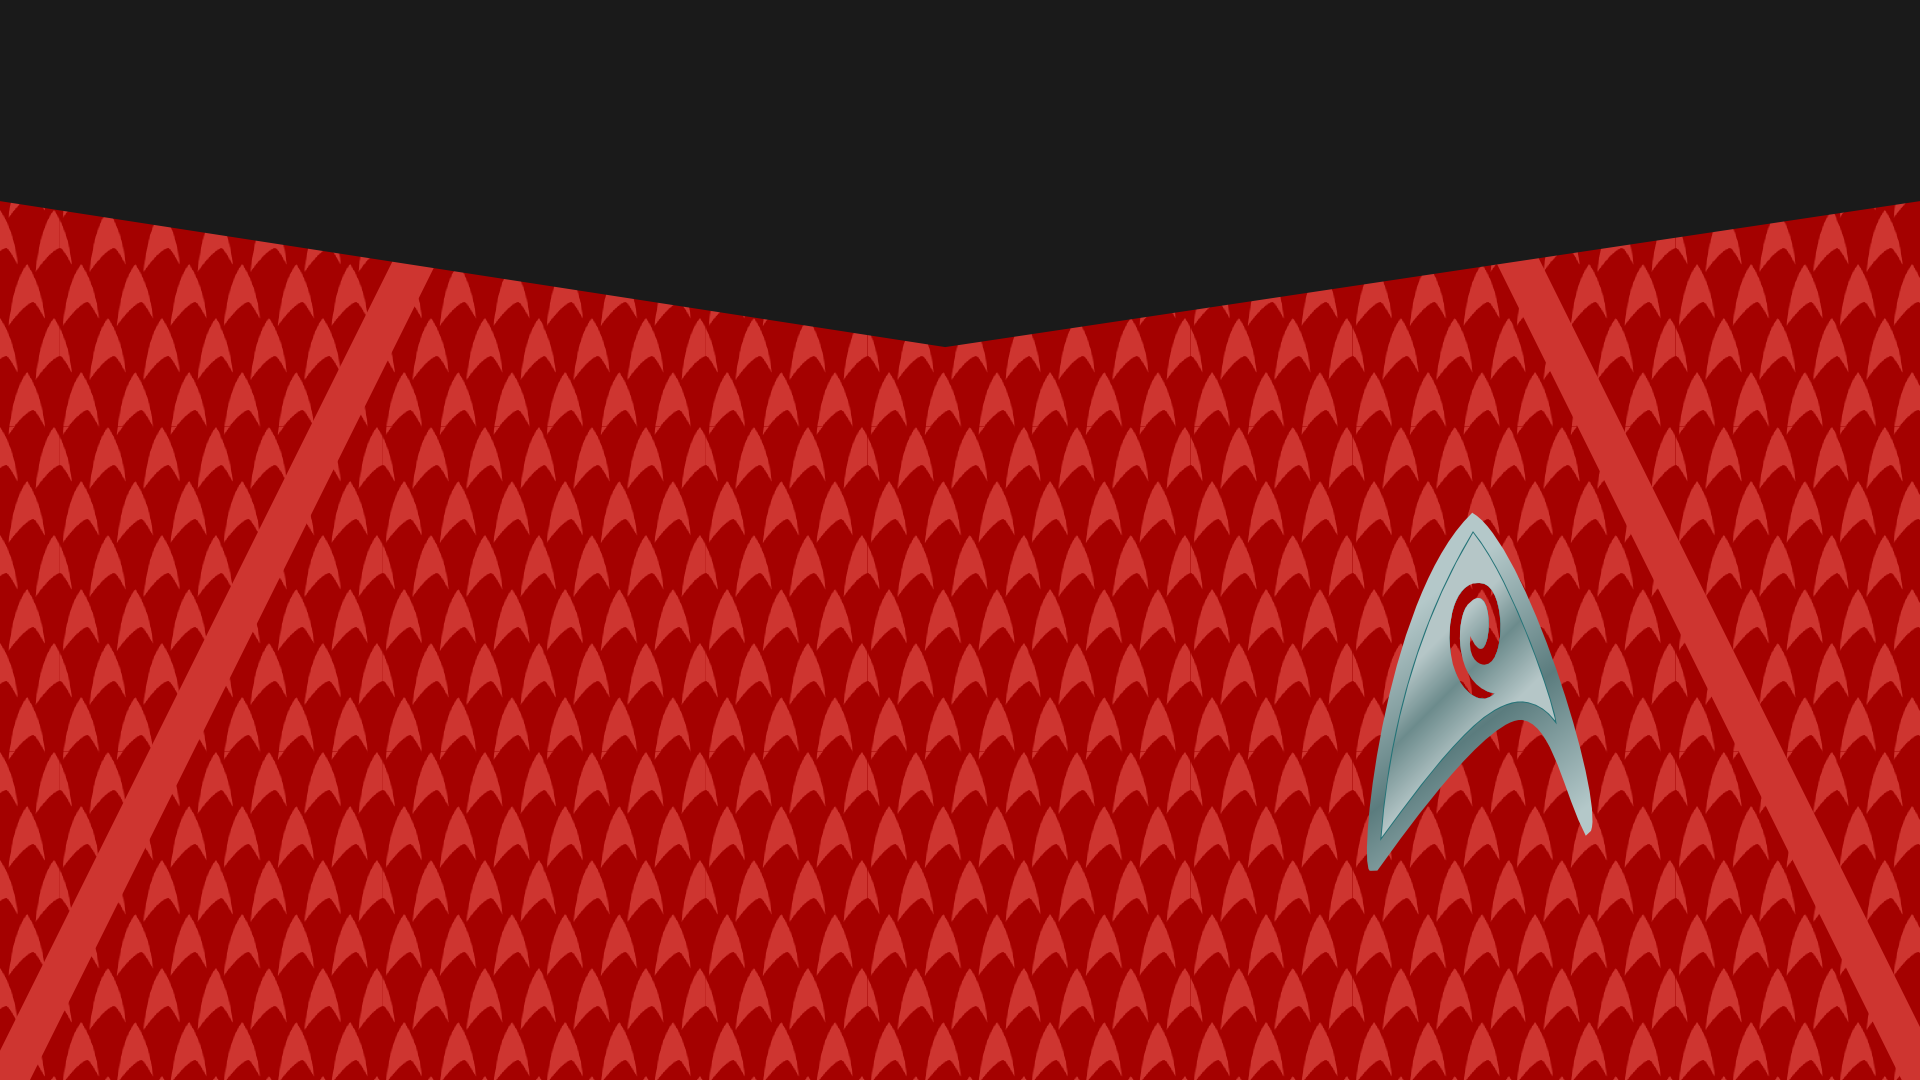 Background Star Trek Uniform